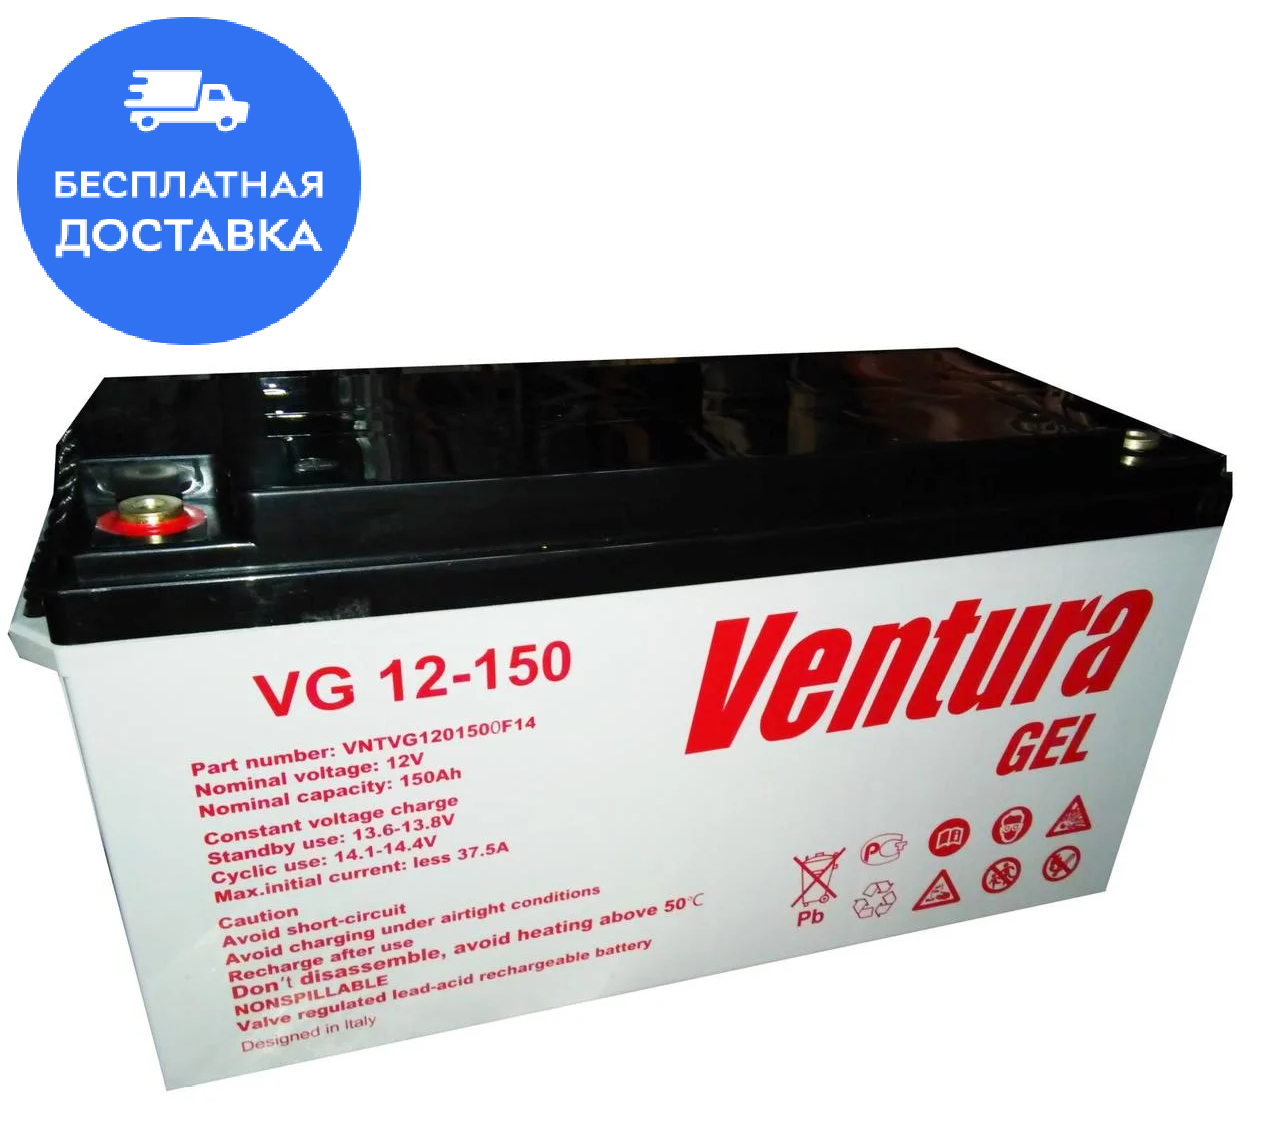 Гелева Ventura GEL VG 12-150 акумуляторна батарея, ємність 150 А·год, Доставка за Наш Стрічок